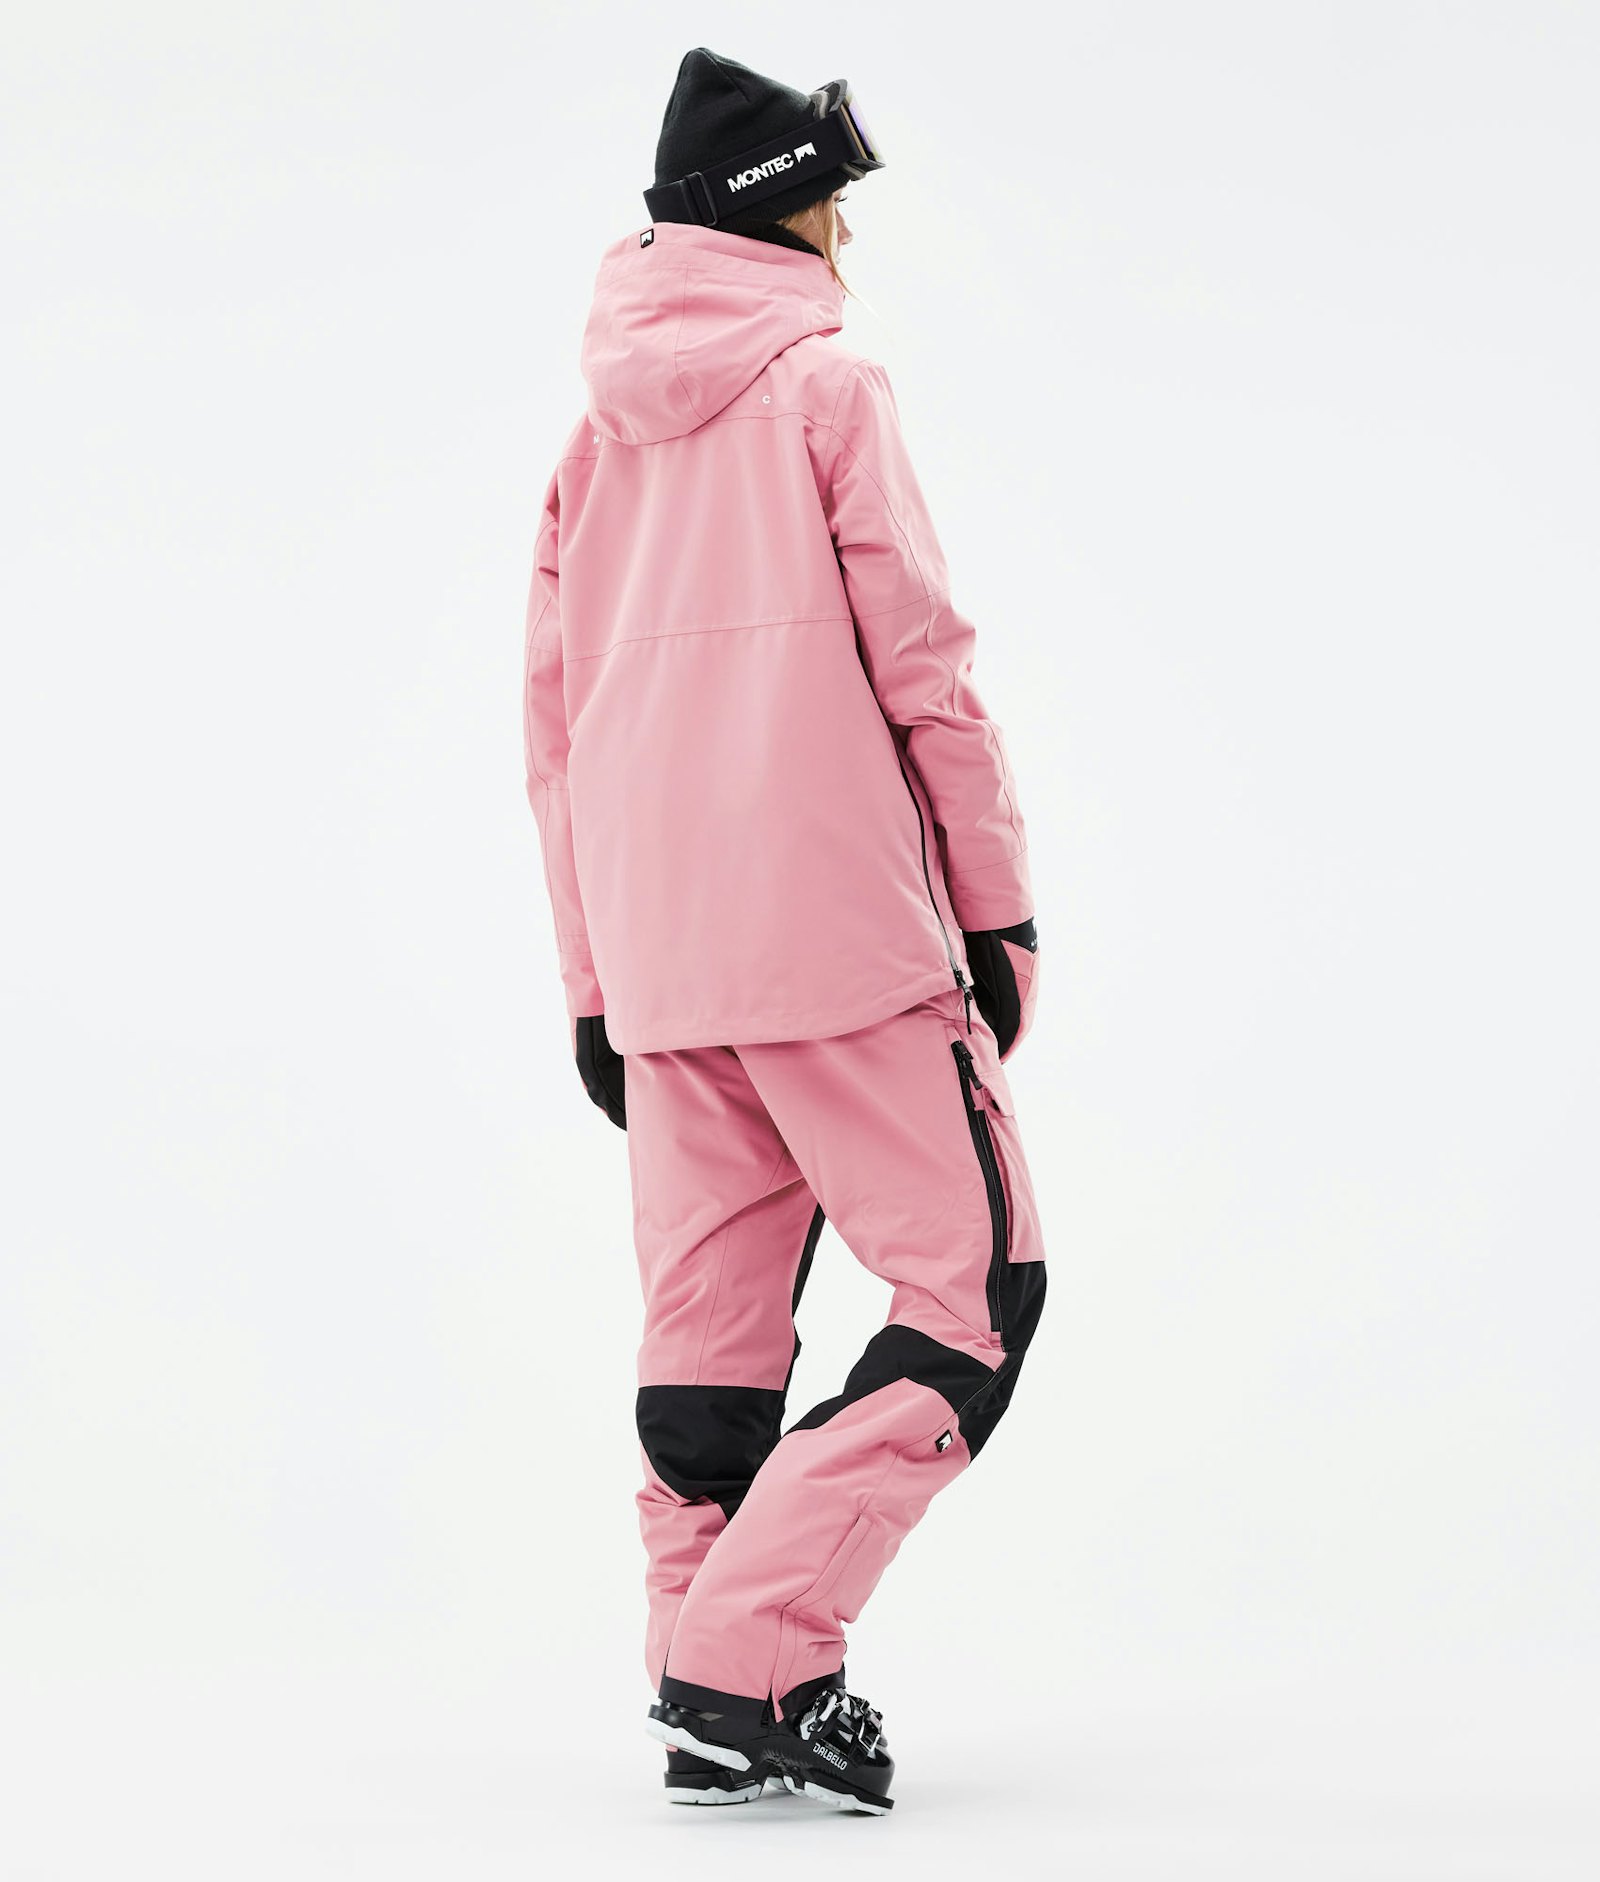 Montec Dune W 2021 Ski jas Dames Pink